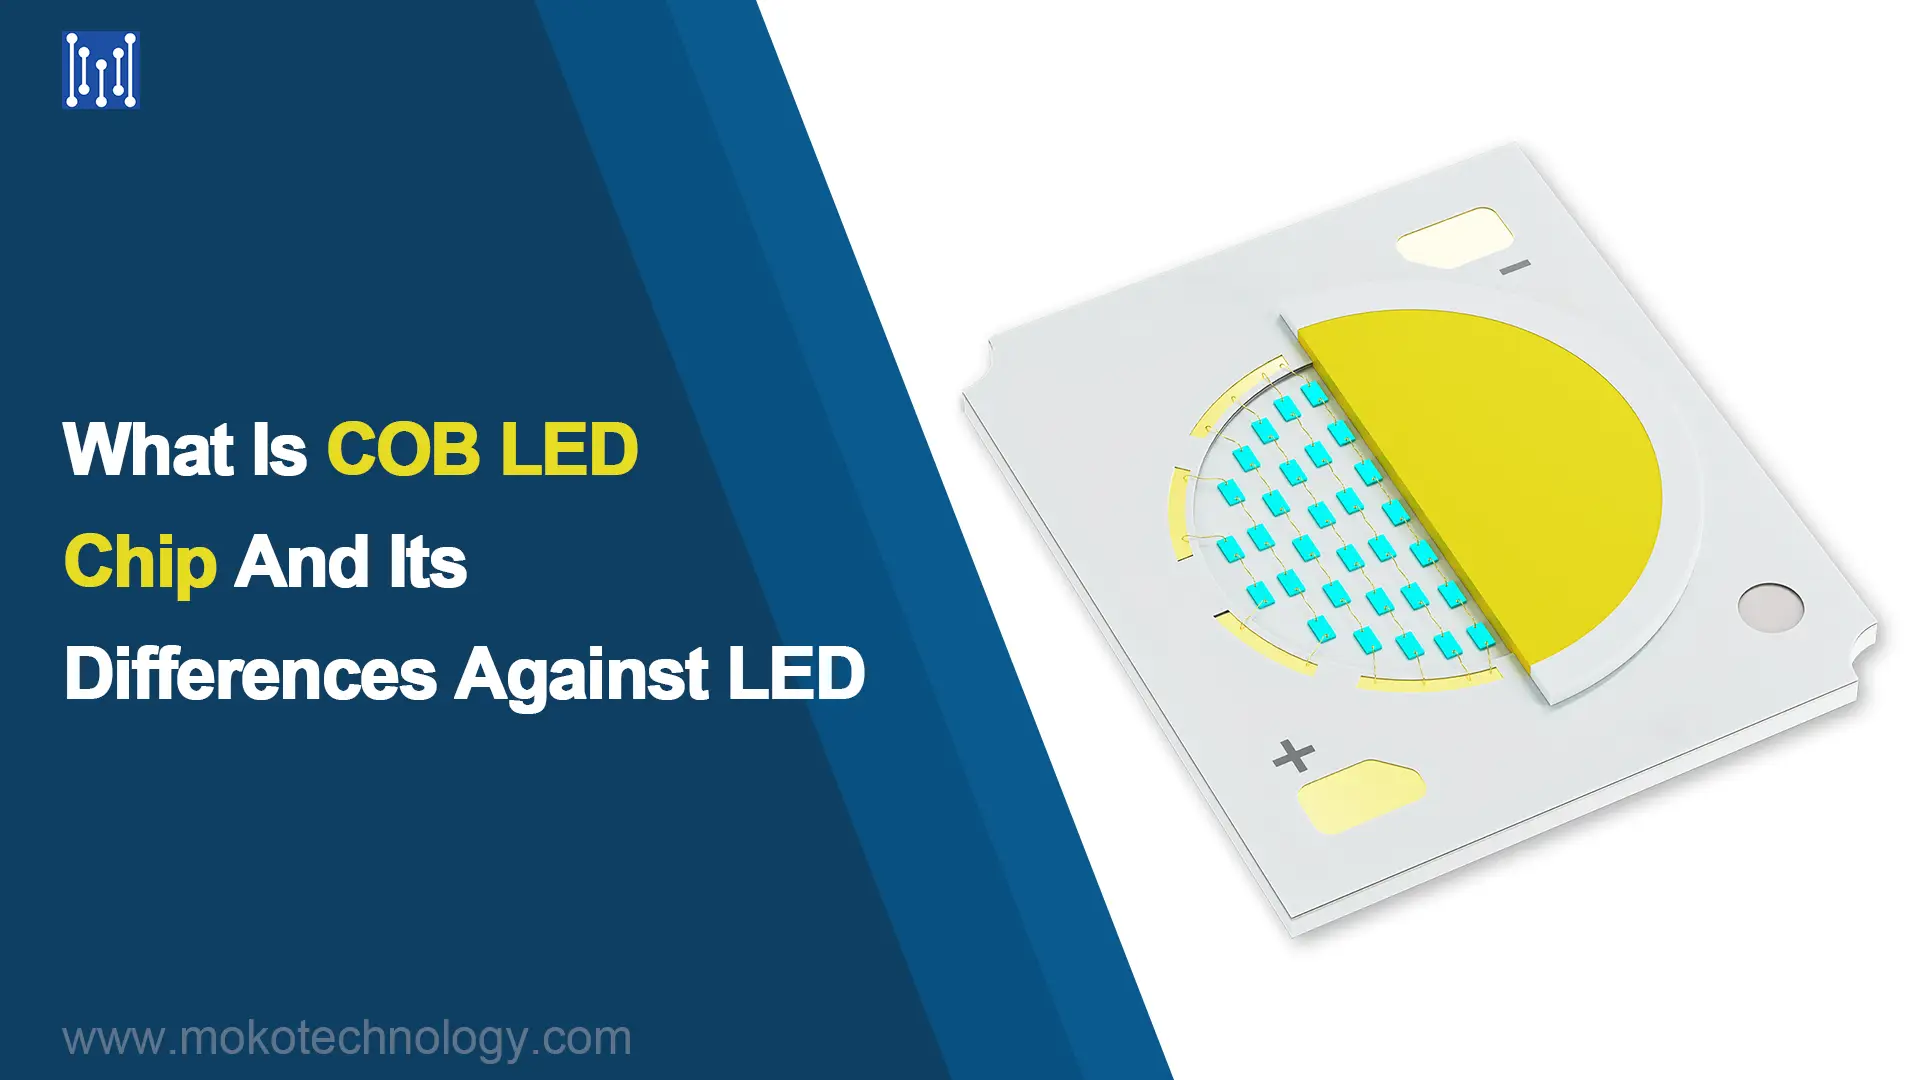 COB LED 칩이란 무엇이며 LED와의 차이점은 무엇입니까?